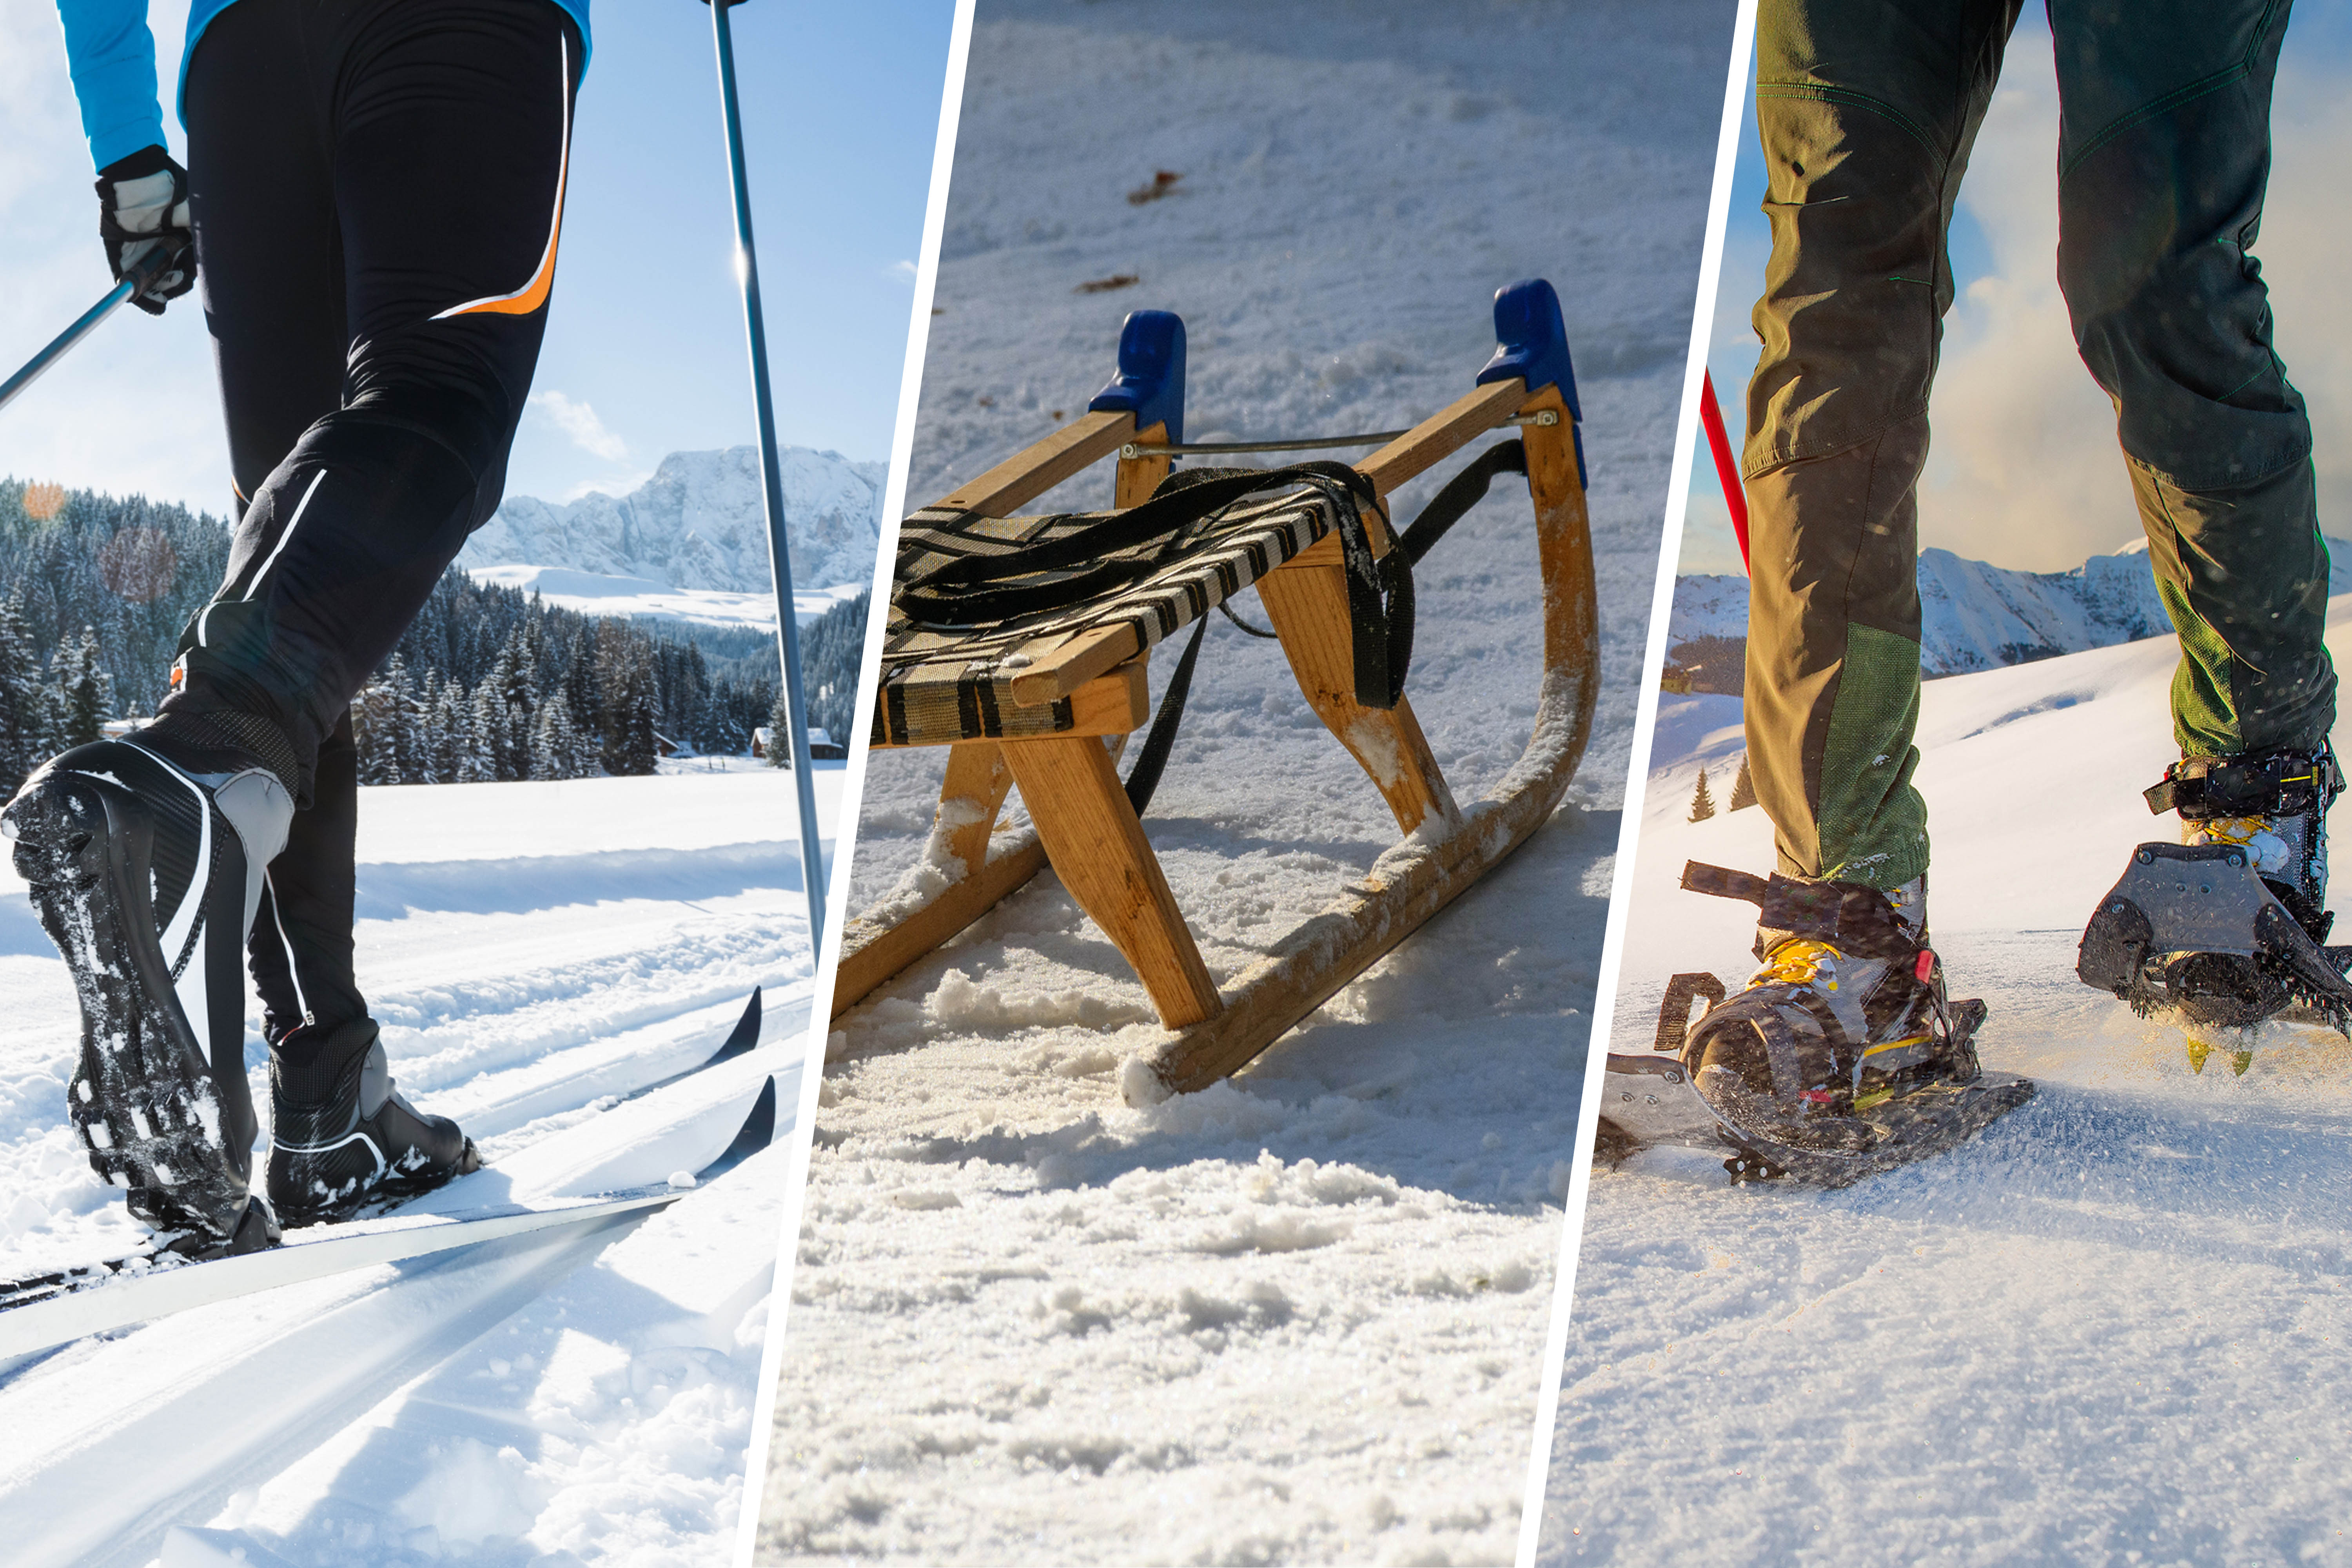 Links in der Bildcollage ist ein Langläufer, in der Mitte ein Davoser Schlitten und rechts ein Schneeschuhwanderer.